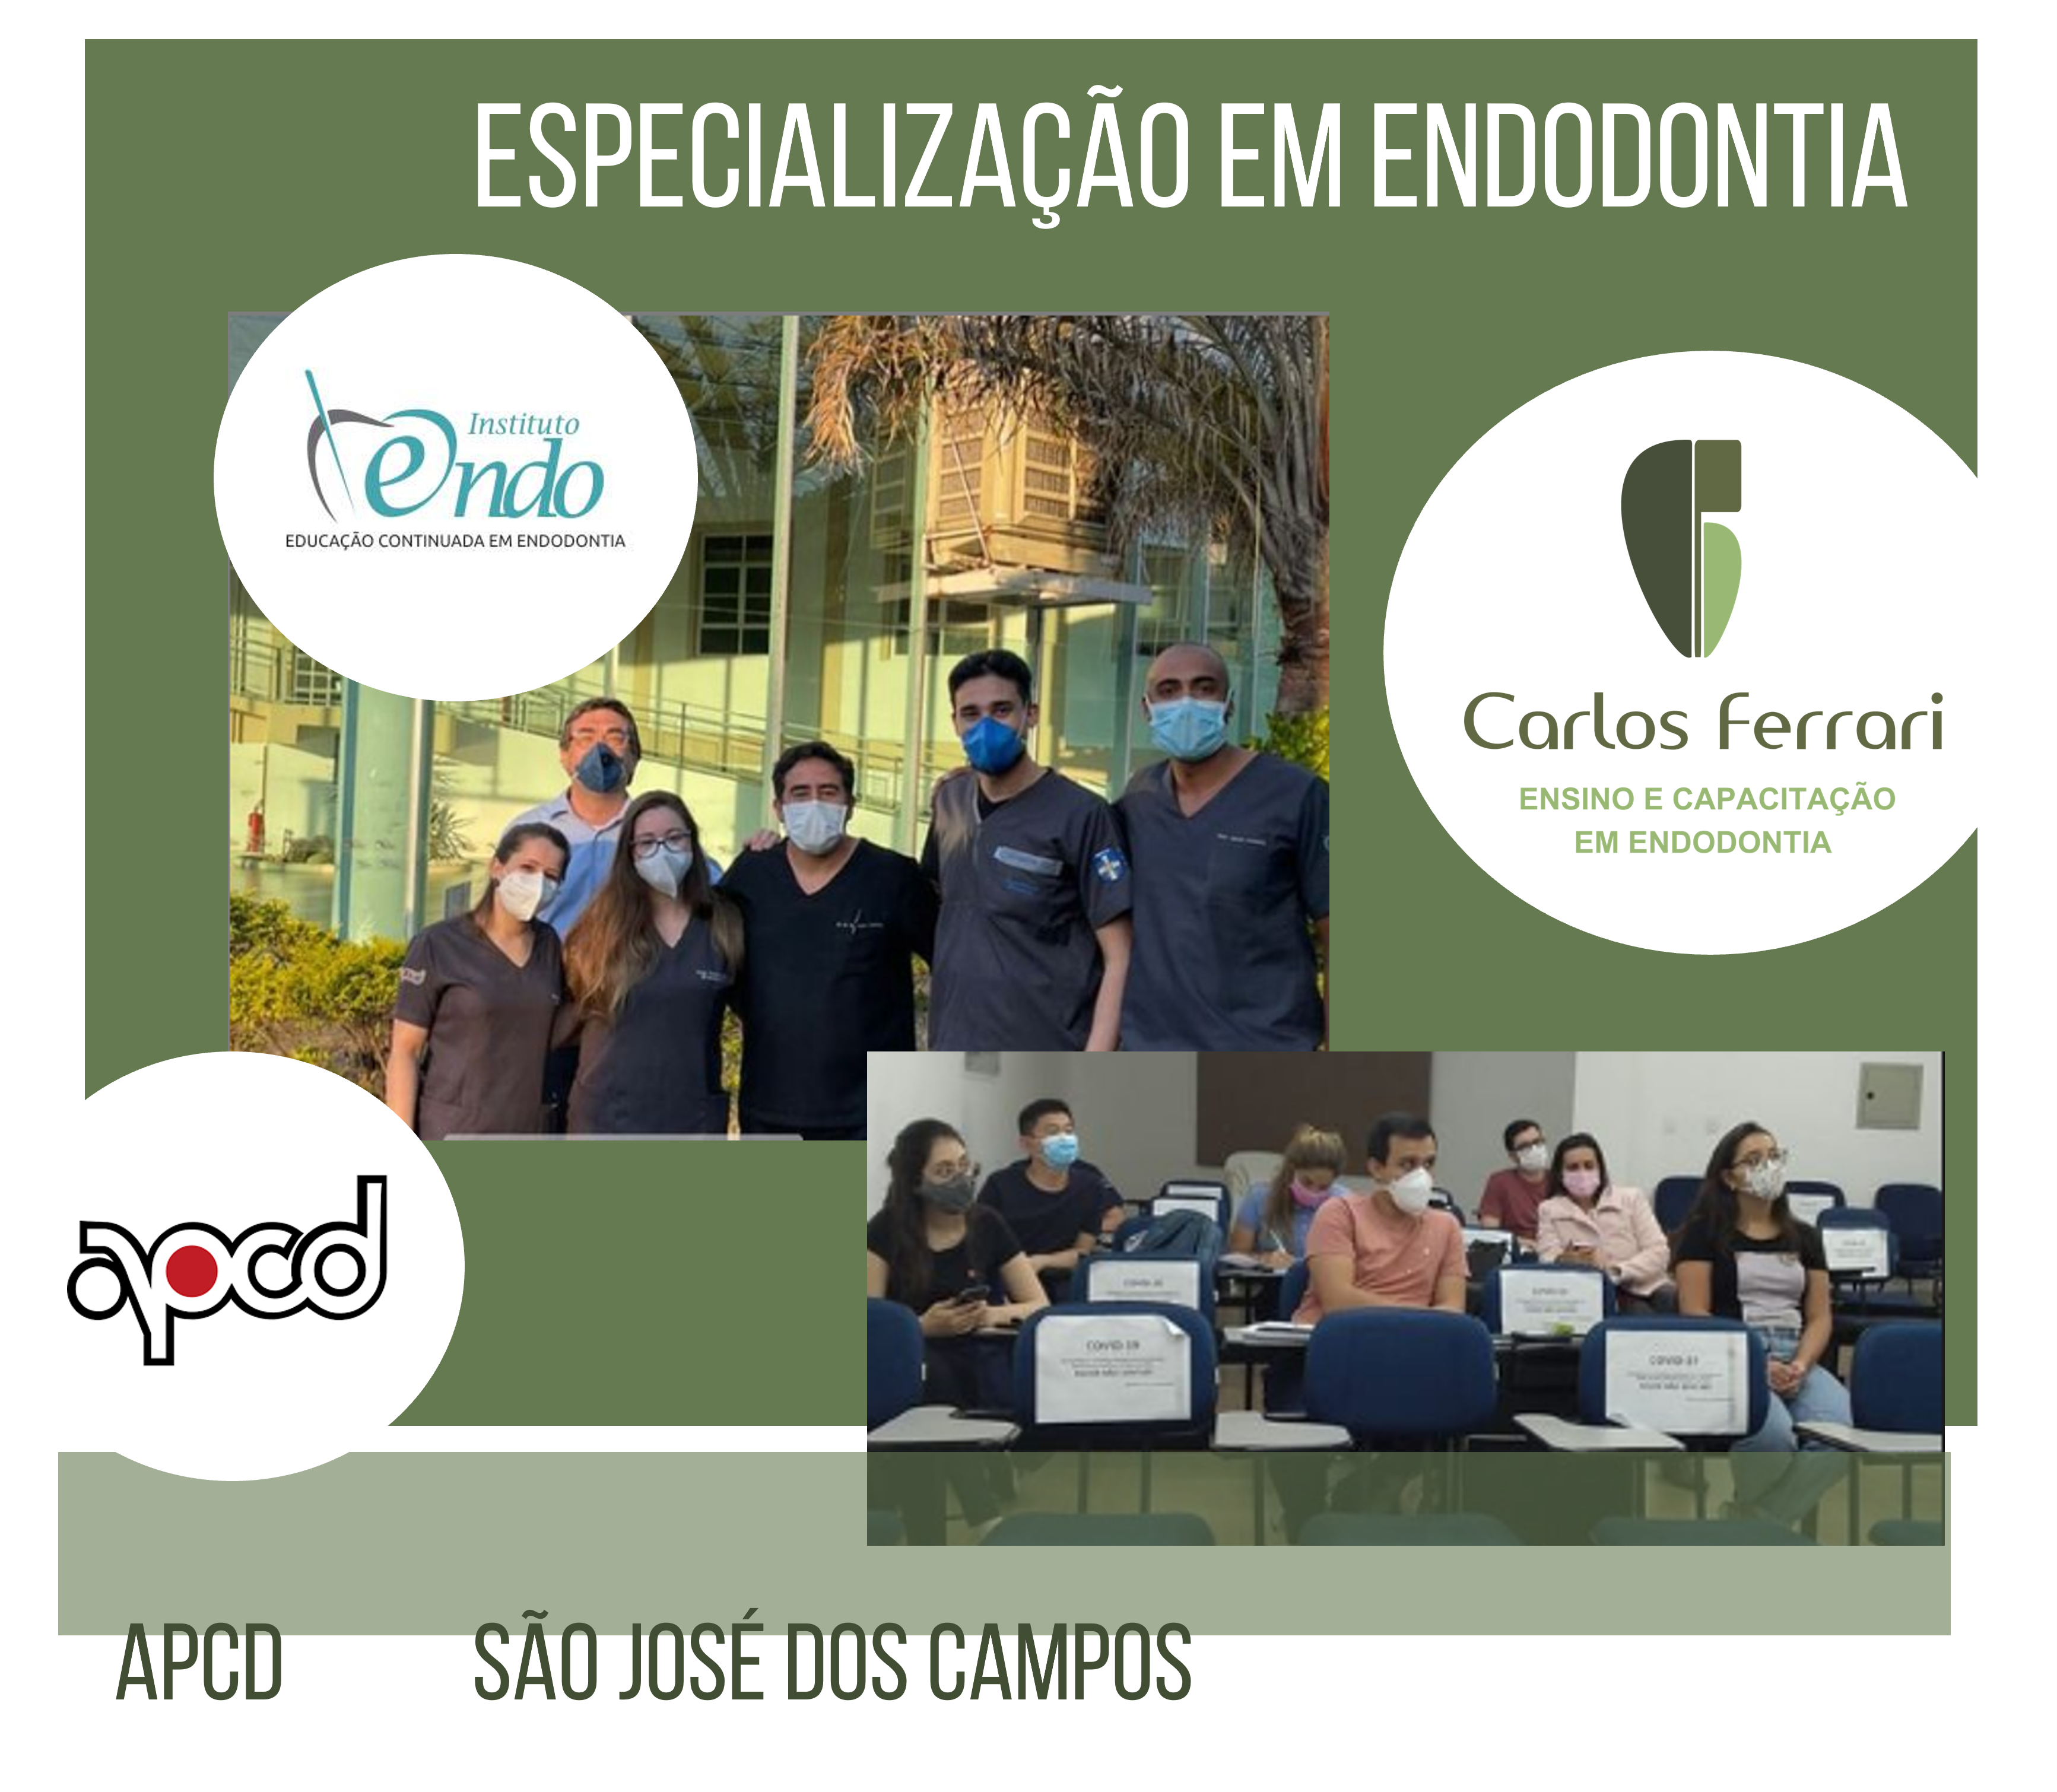 You are currently viewing Specialization in Endodontics APCD São José dos Campos.